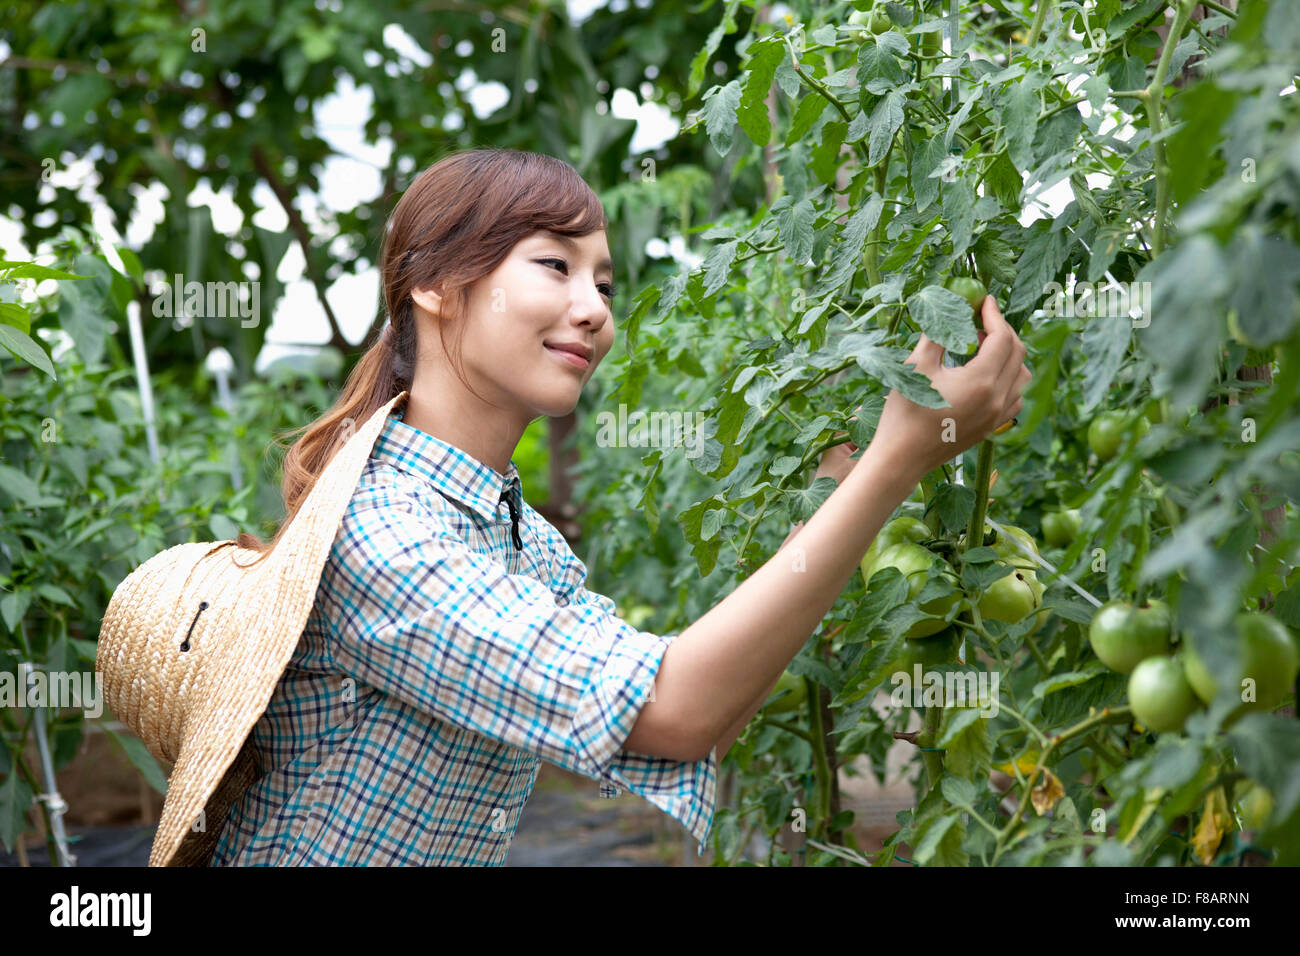 Seite Ansicht Porträt Frau grüne Tomaten mit einem Lächeln zu beobachten Stockfoto